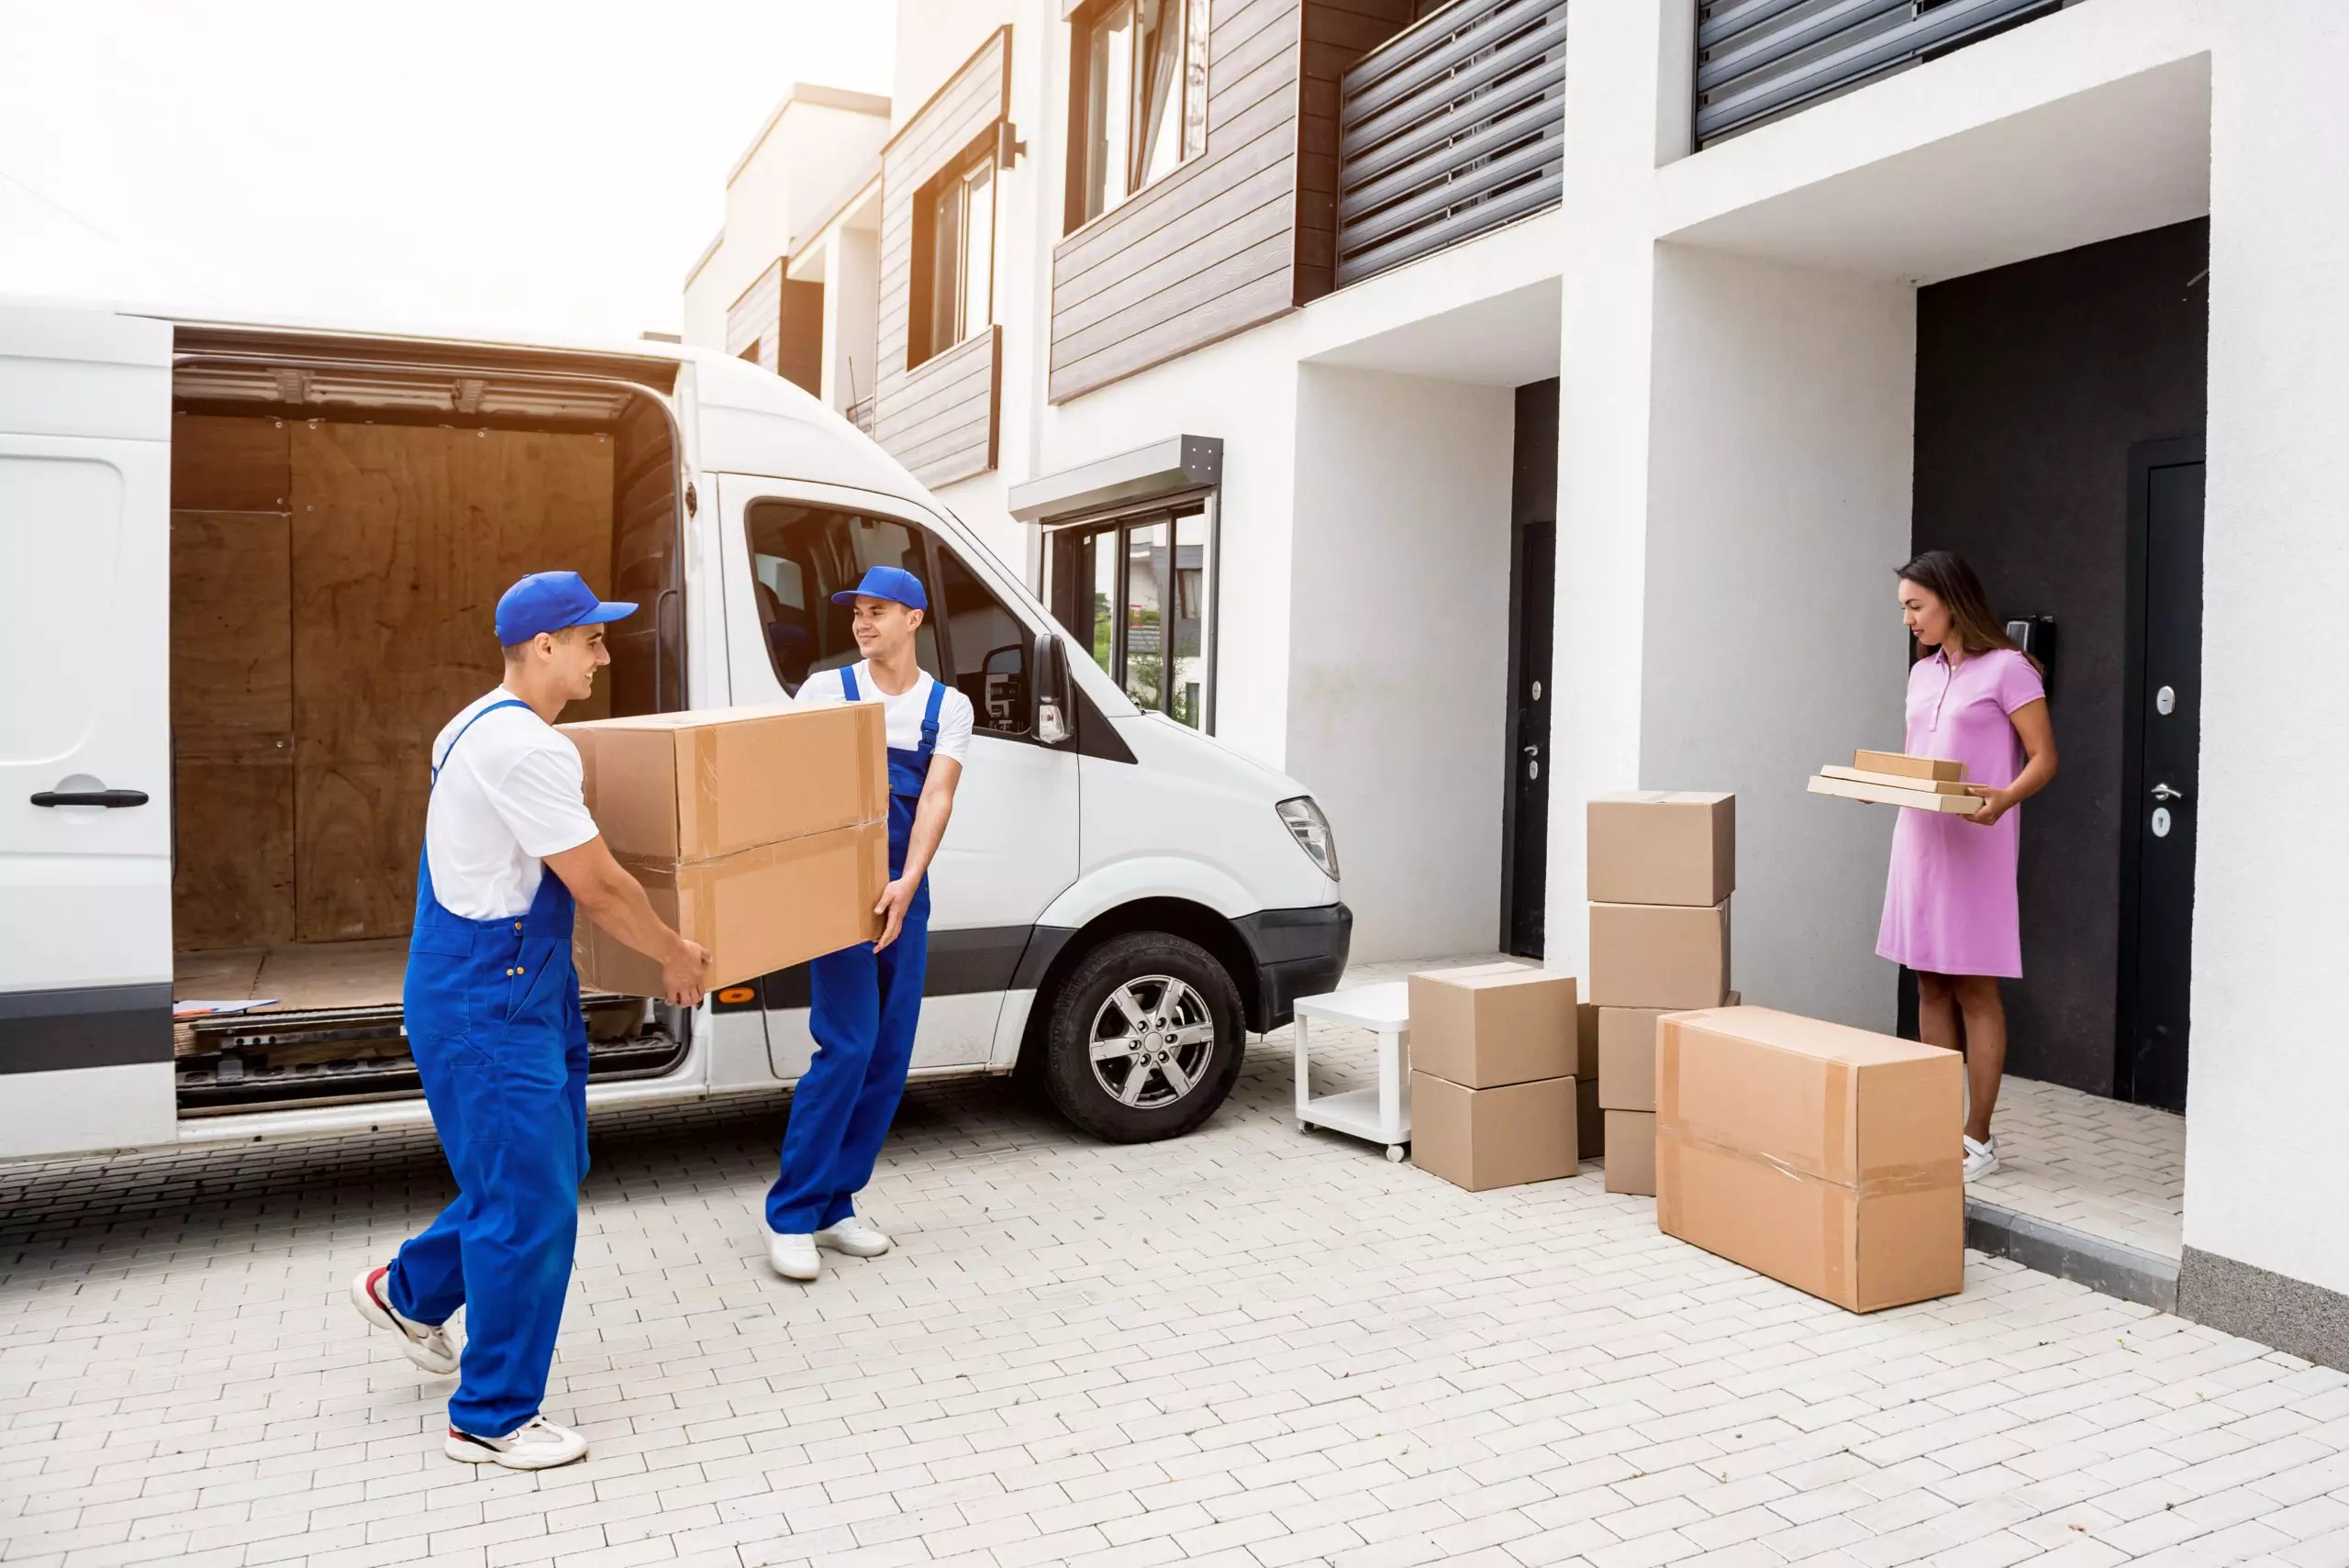 Zwei Umzugshelfer in blauen Uniformen eines Umzugsunternehmens laden Kisten aus einem weißen Lieferwagen aus. Umzugsfirma-SUMO Entrümpelung